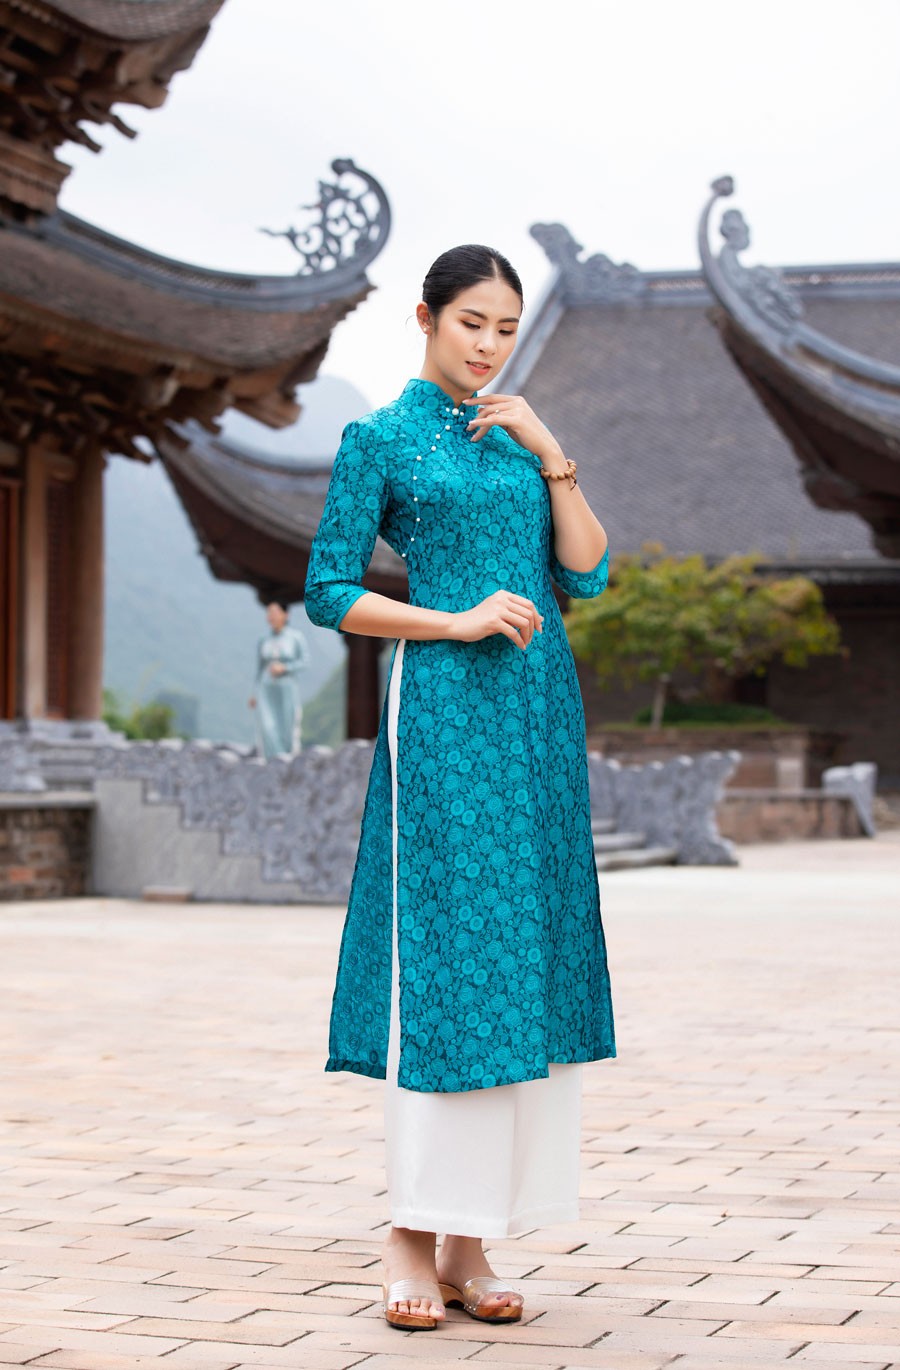 Hoa hậu Ngọc Hân dịu dàng, duyên dáng khi làm mẫu bộ sưu tập pháp phục vãn cảnh chùa